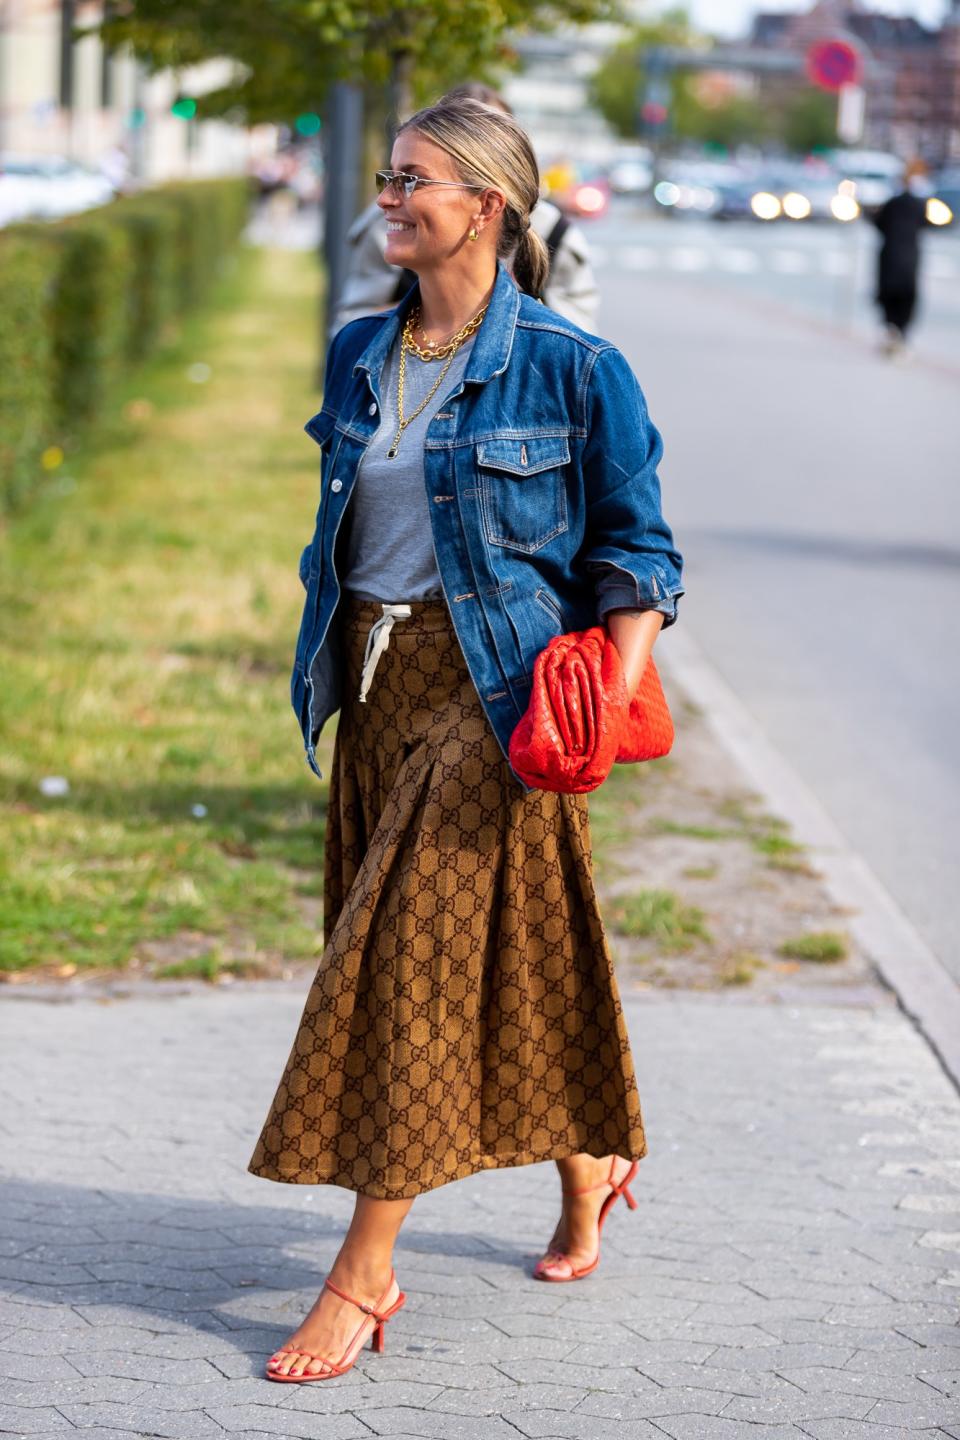 The Best Street Style From Copenhagen Fashion Week 2019